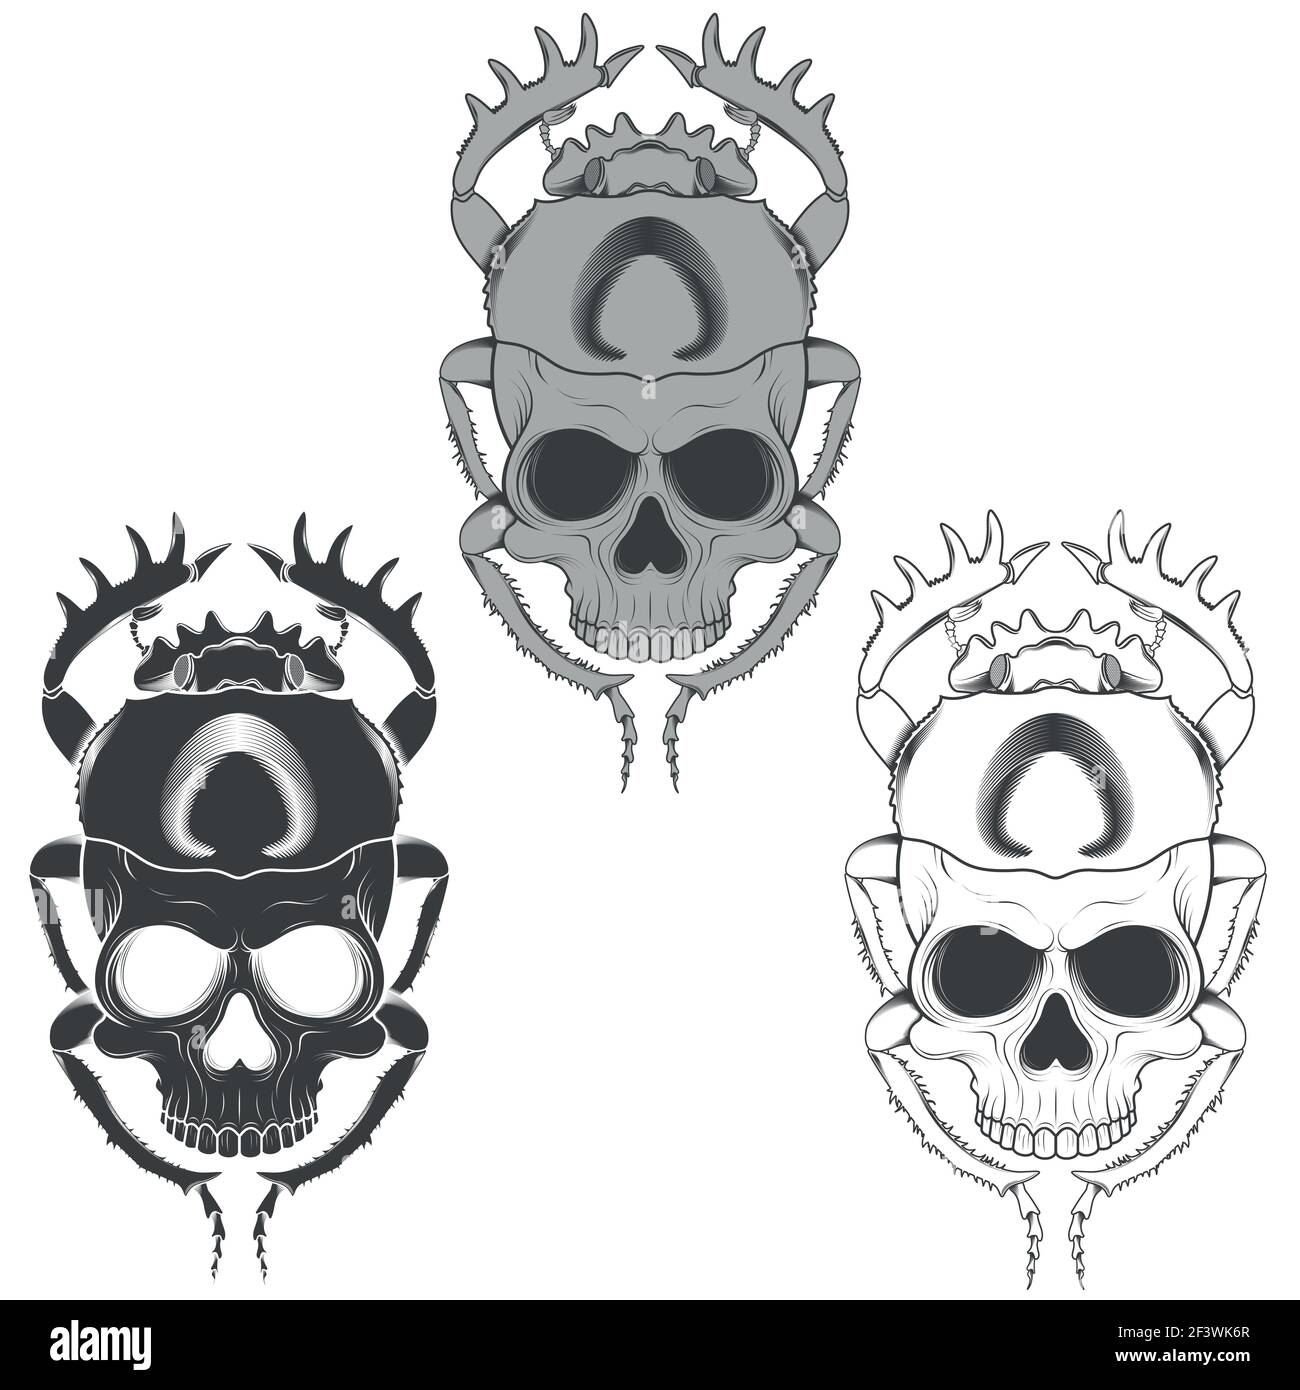 Silueta vectorial de escarabajo de miedo con cráneo, ilustración de escarabajo en forma de muerte, silueta blanca y negra Ilustración del Vector